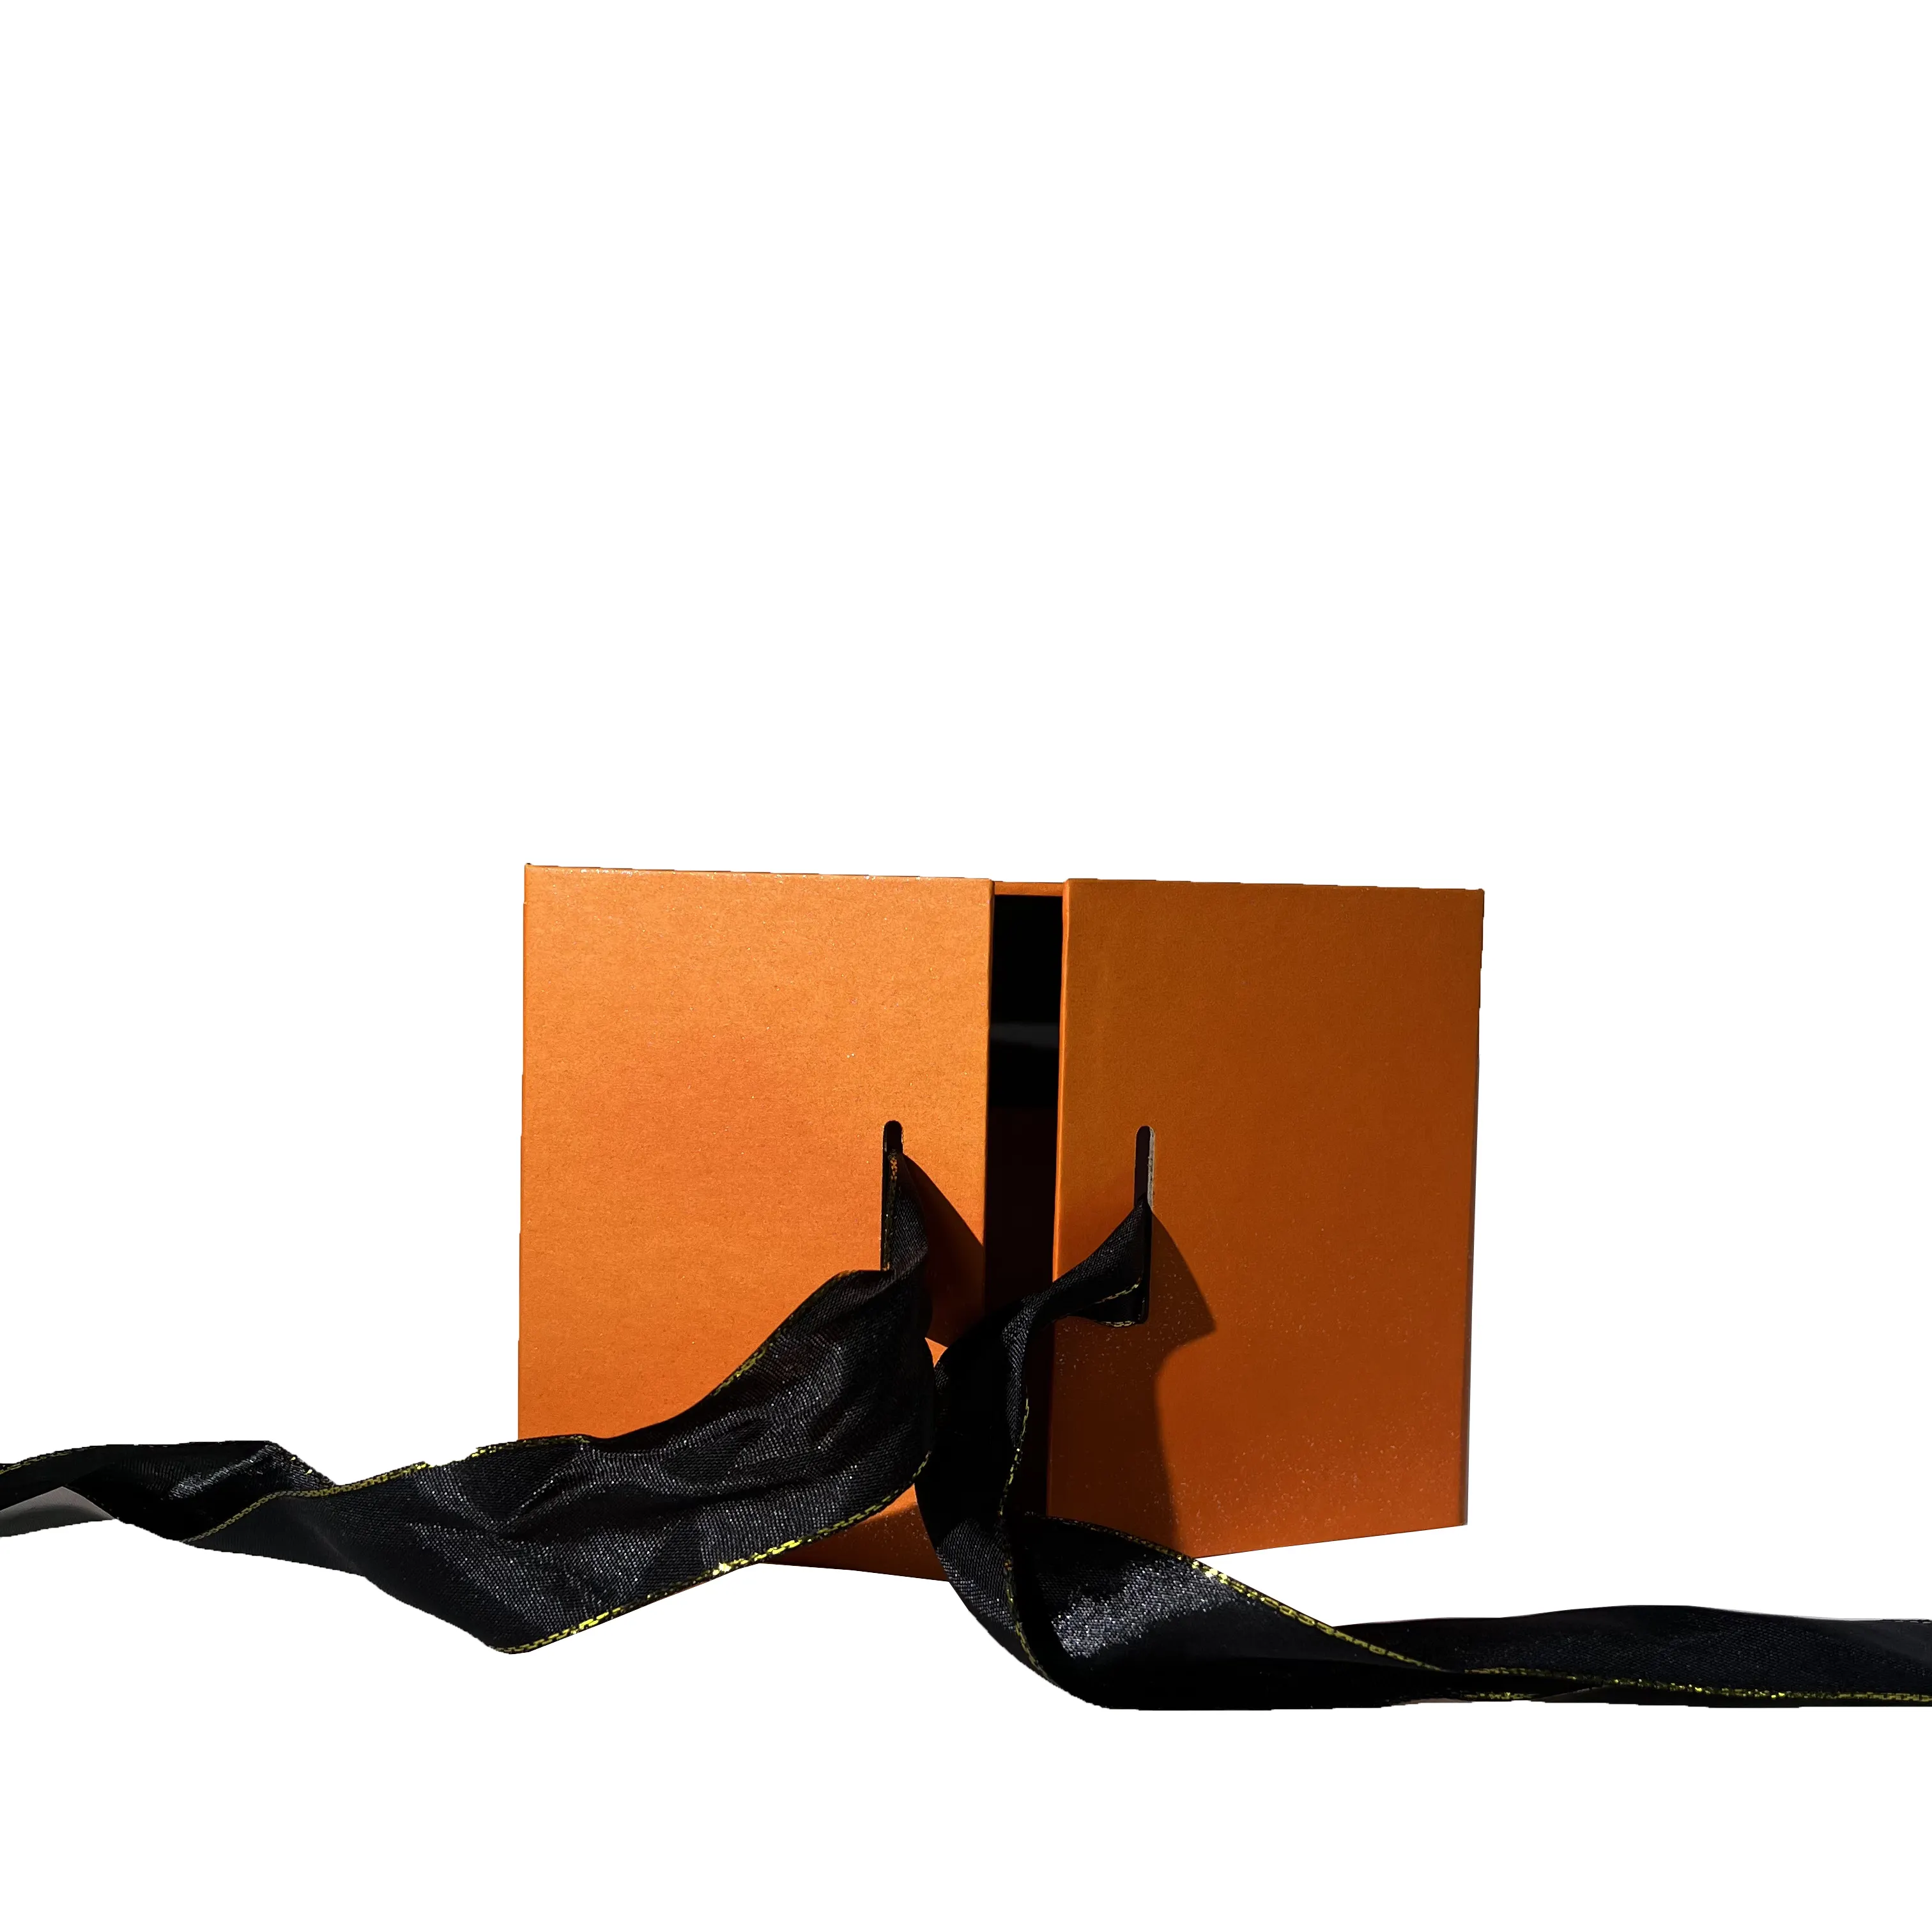 Paquete de joyería para el cabello de papel Kraft reciclable de materiales de cartón rígido Cajas de joyería para perforaciones corporales